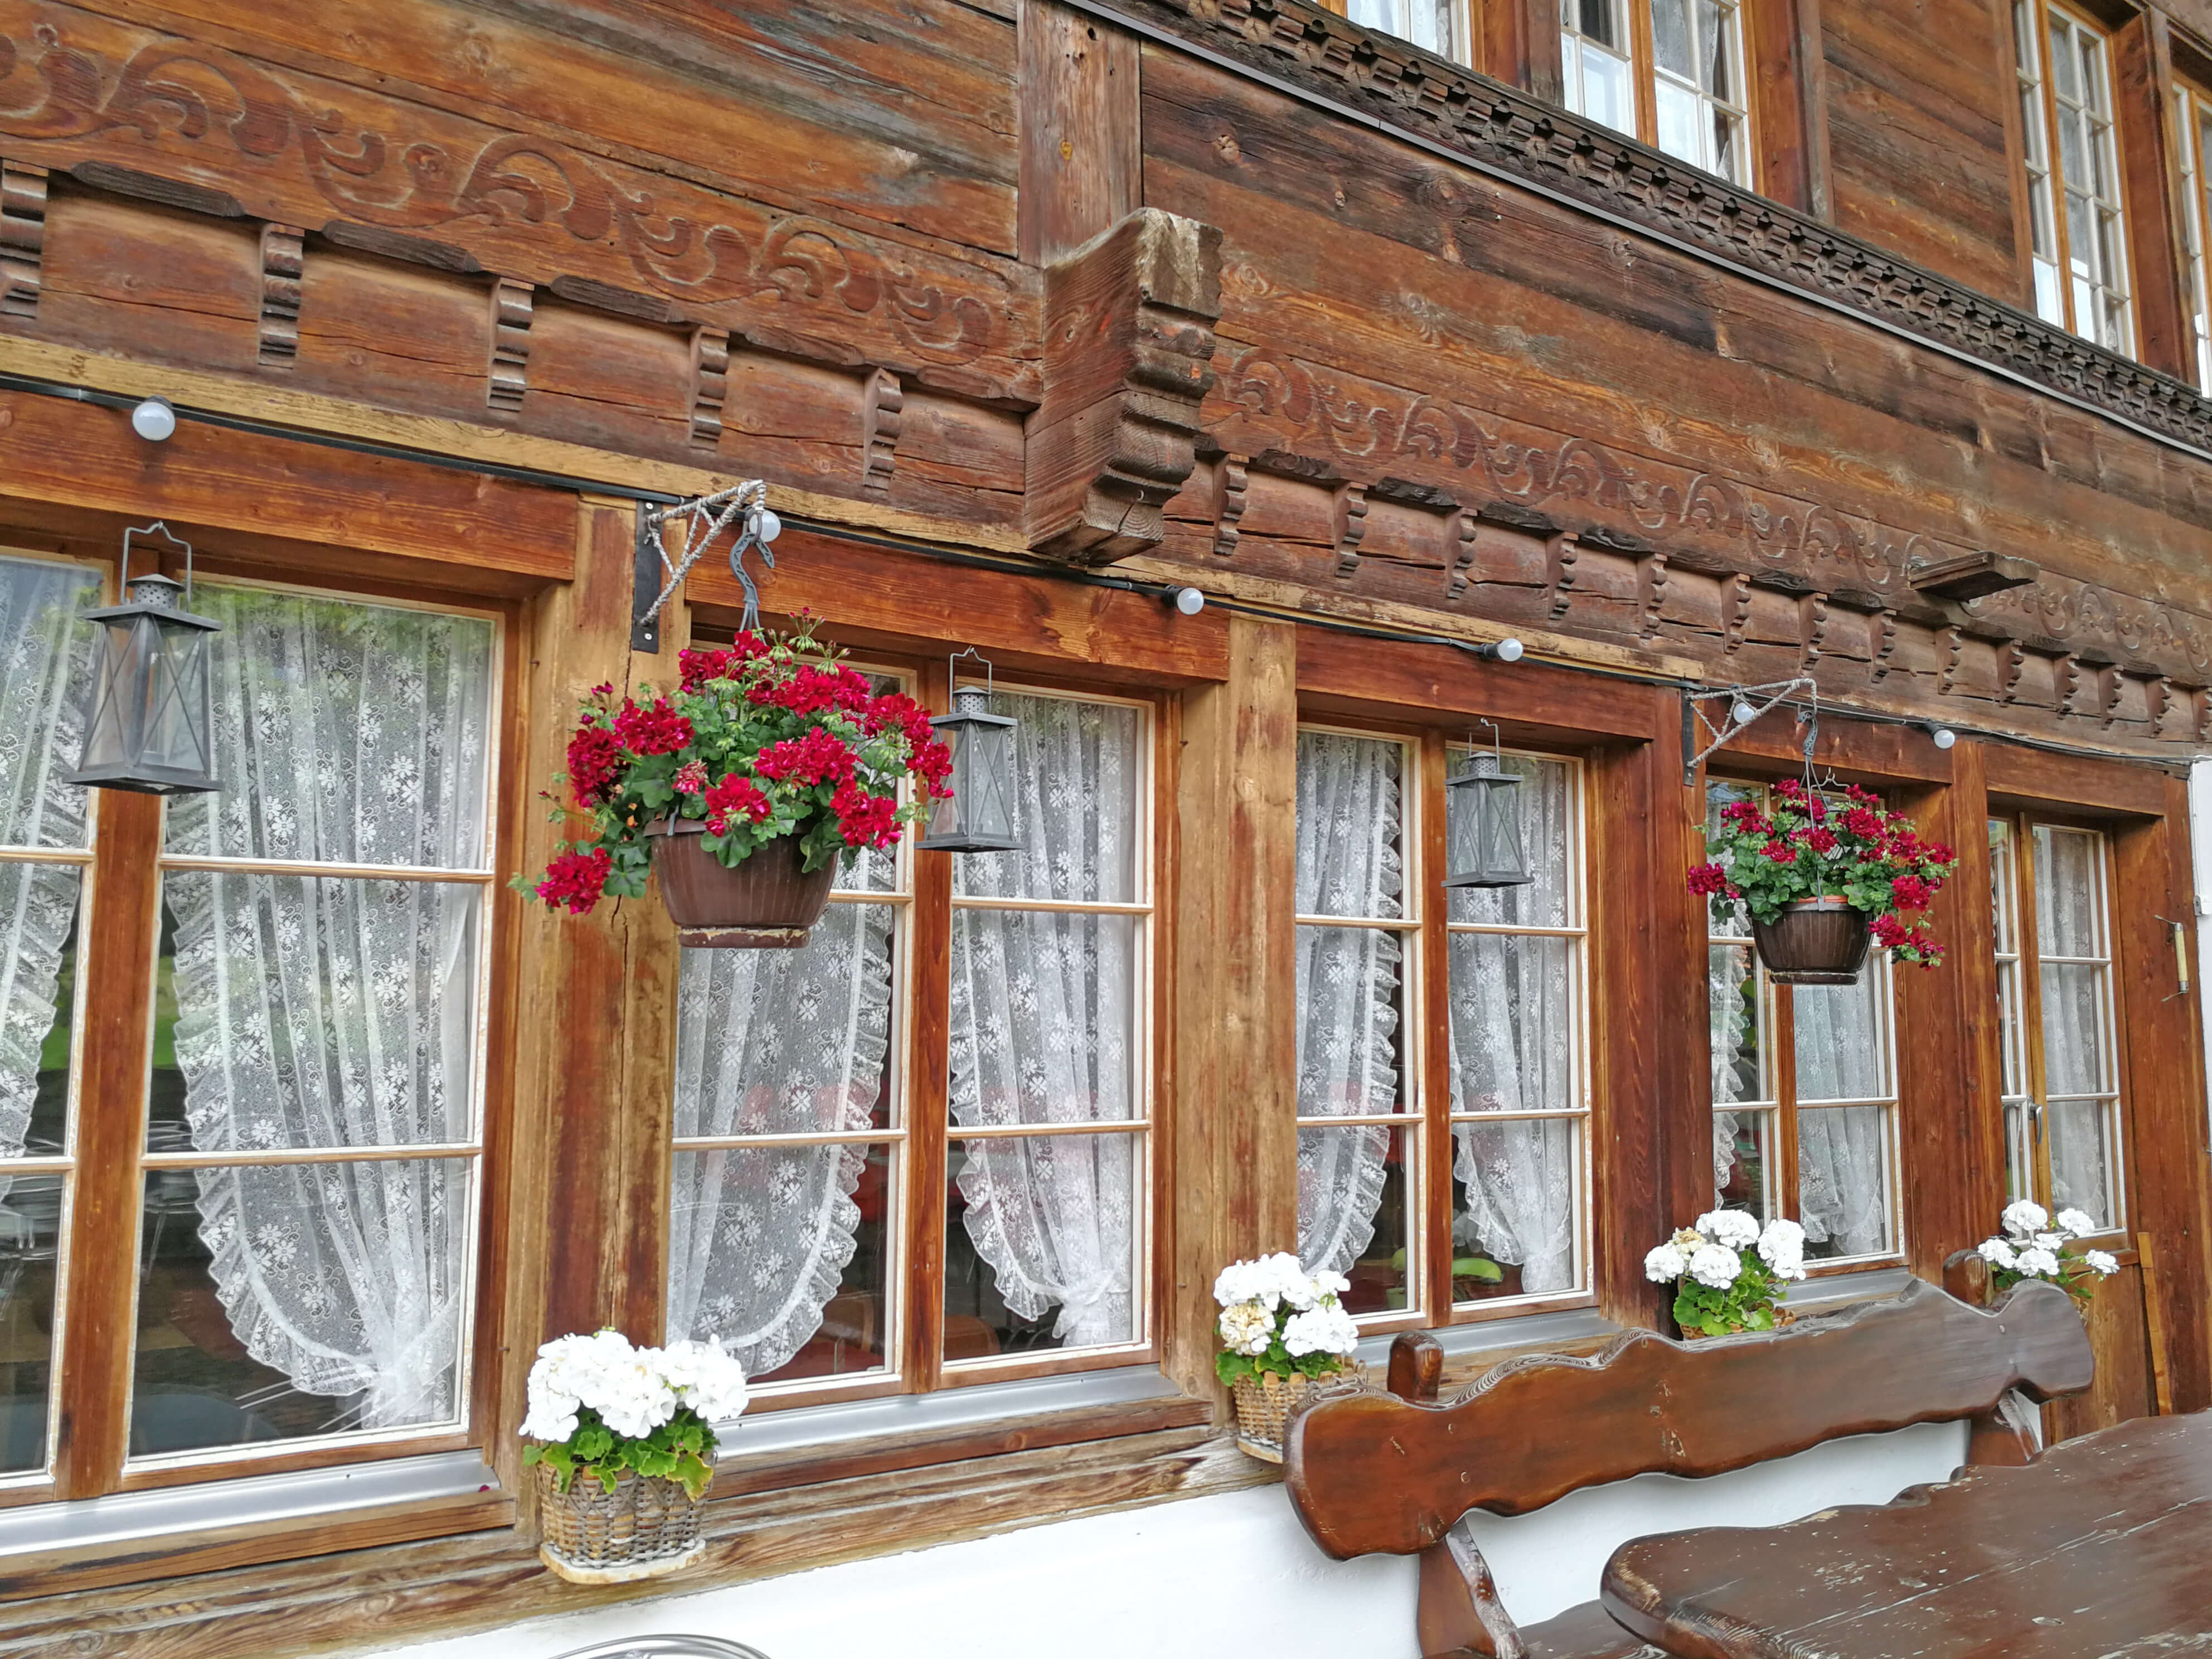 Windows of the restaurant Hirschen Diemtigen